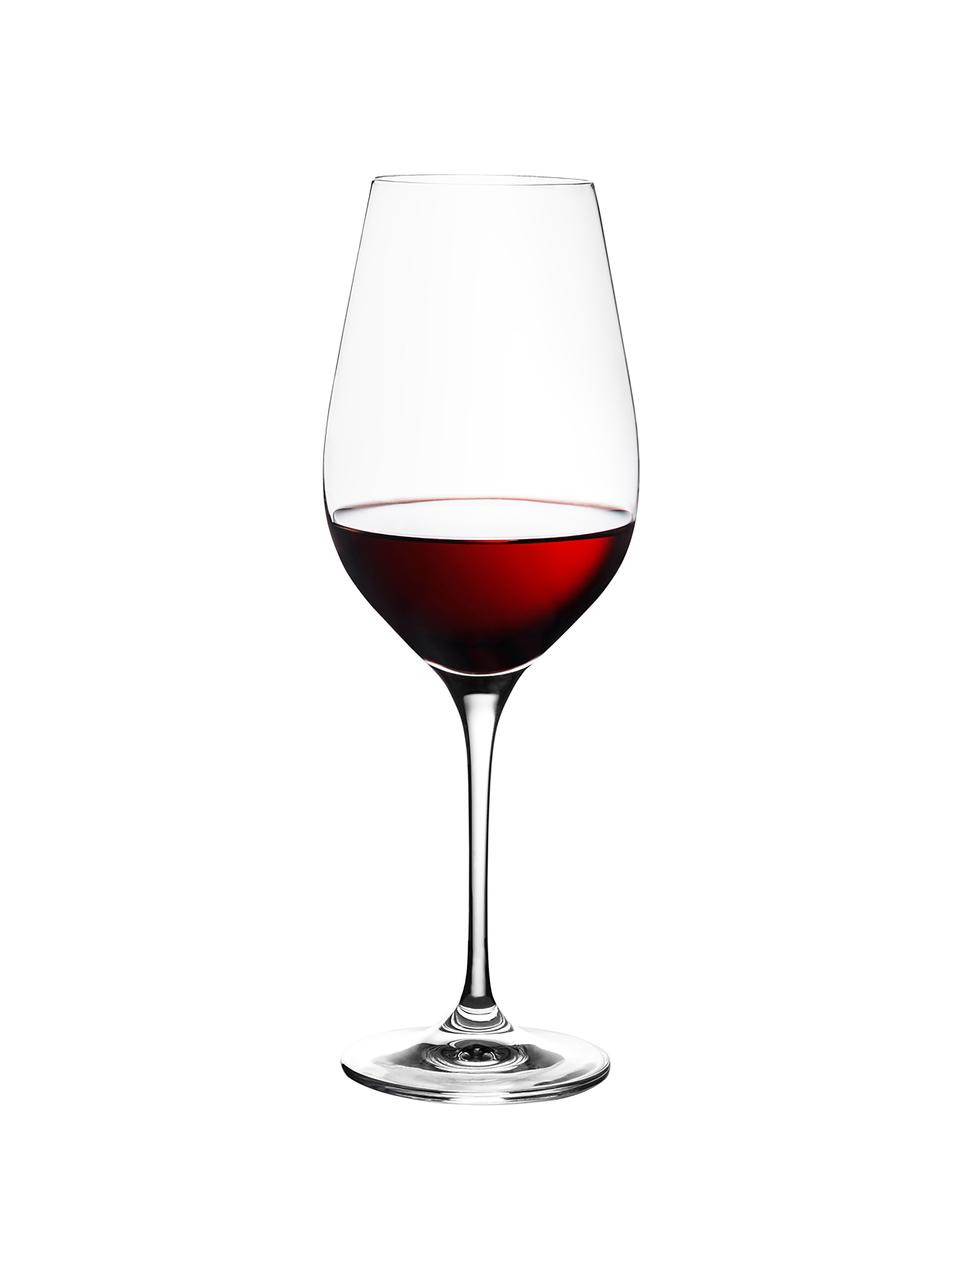 Kristall-Rotweingläser Harmony aus glattem Kisrtalllas, 6 Stück, Edelster Glanz – das Kristallglas bricht einfallendes Licht besonders stark. So entsteht ein märchenhaftes Funkeln, das jede Weinverkostung zu einem ganz besonderen Erlebnis macht., Transparent, Ø 8 x H 24 cm